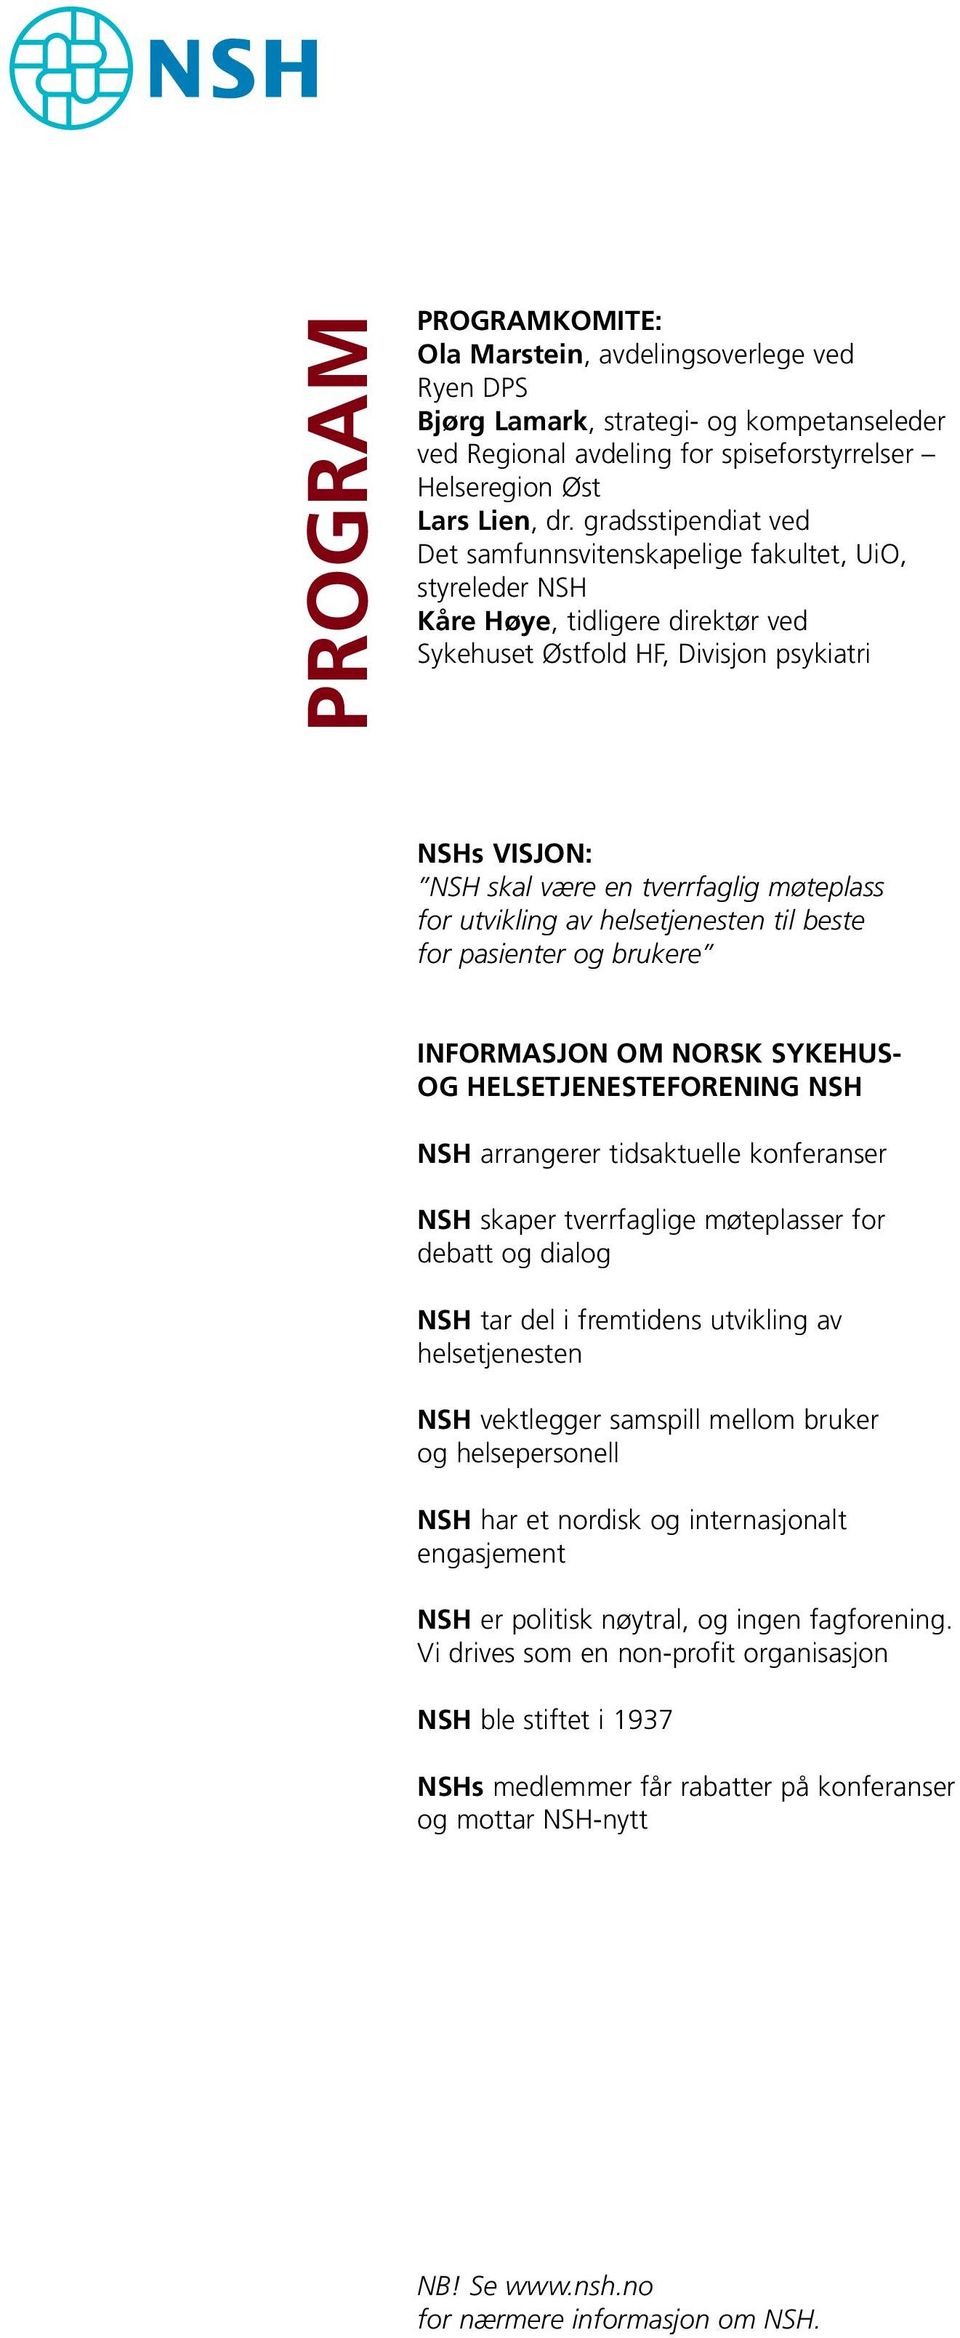 møteplass for utvikling av helsetjenesten til beste for pasienter og brukere INFORMASJON OM NORSK SYKEHUS- OG HELSETJENESTEFORENING NSH NSH arrangerer tidsaktuelle konferanser NSH skaper tverrfaglige